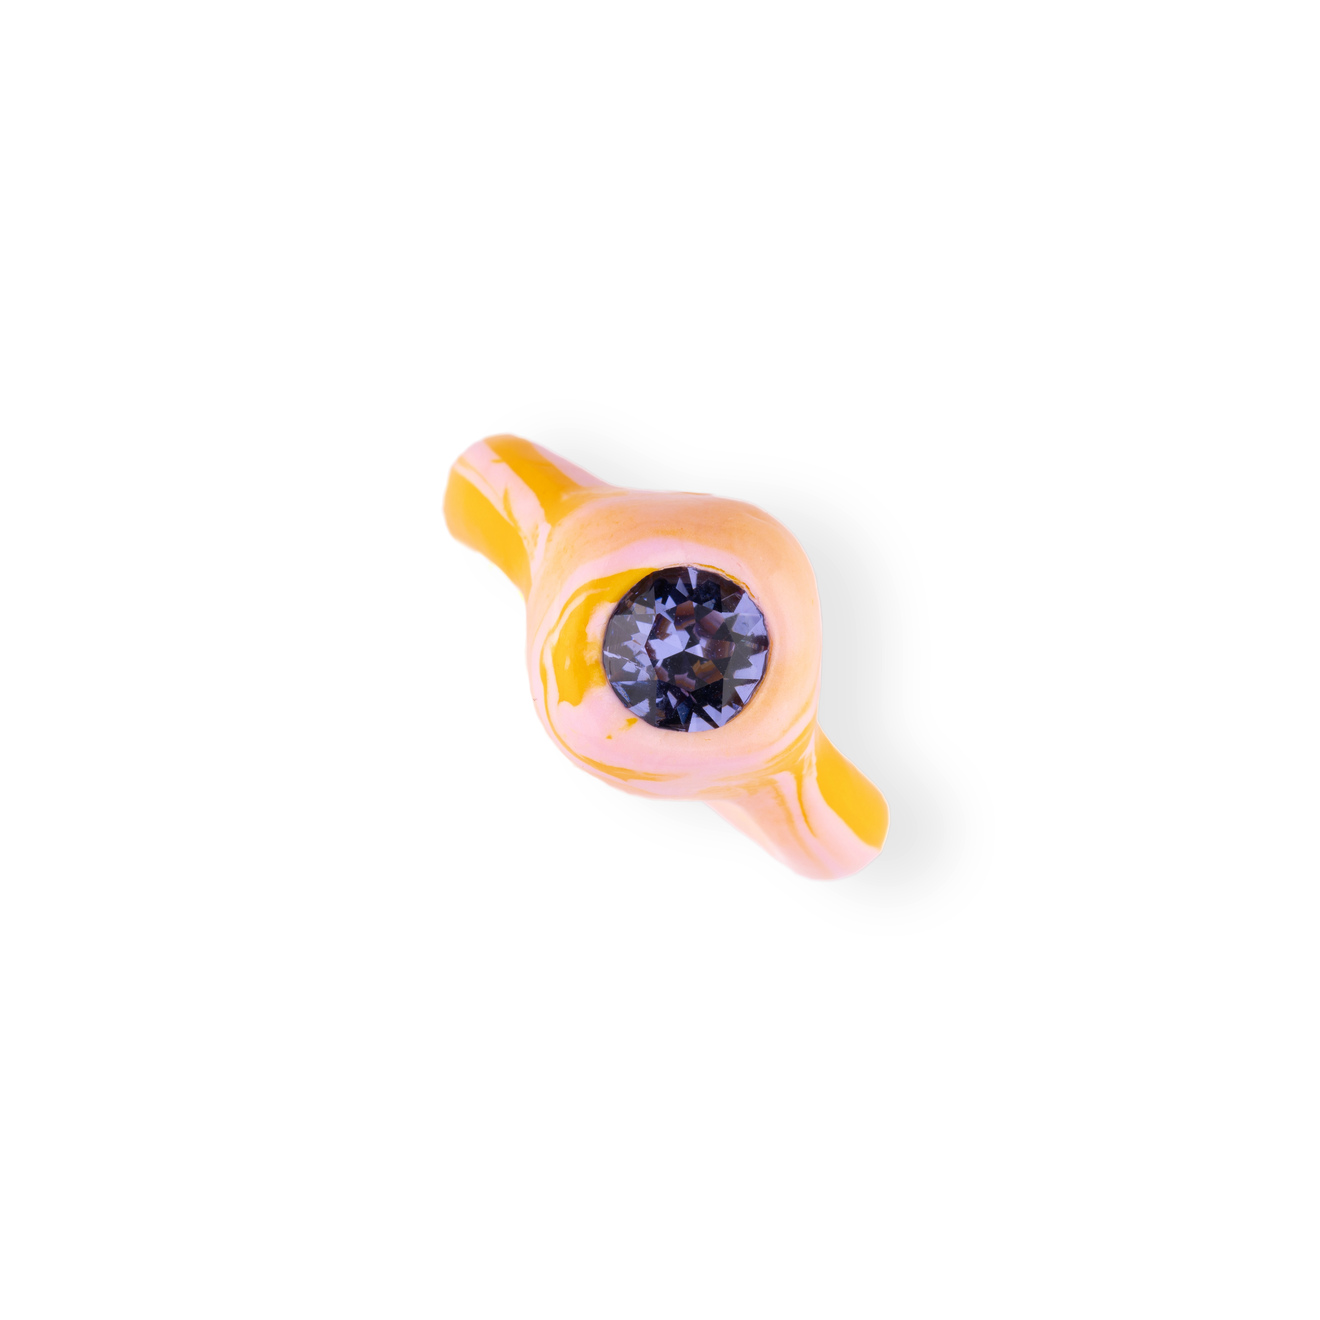 de.formee Кольцо тай-дай желтое с розовым цветом из полимерной глины с сиреневым камнем de formee кольцо синего цвета из полимерной глины с прозрачным камнем